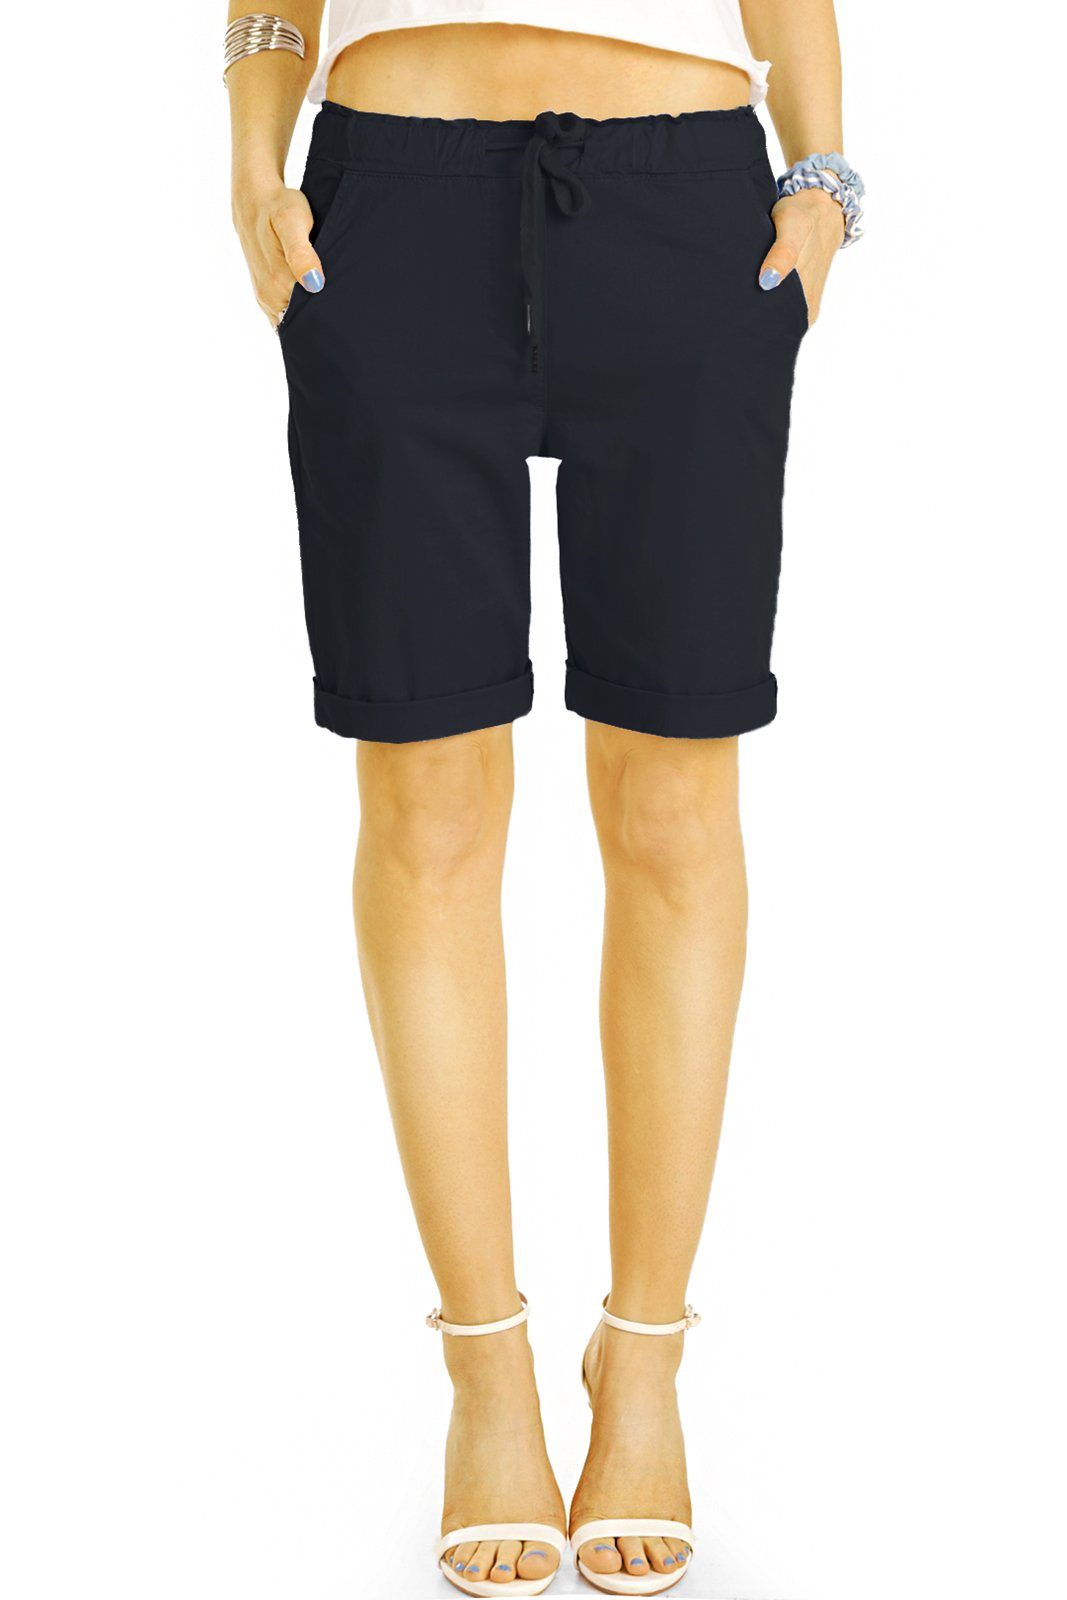 be styled Shorts Chino Stoff Shorts - Kurze lockere Hosen mit Kordelzug - Damen - h28a mit Kordelzug, in Unifarben, mit elastischem Bund schwarz